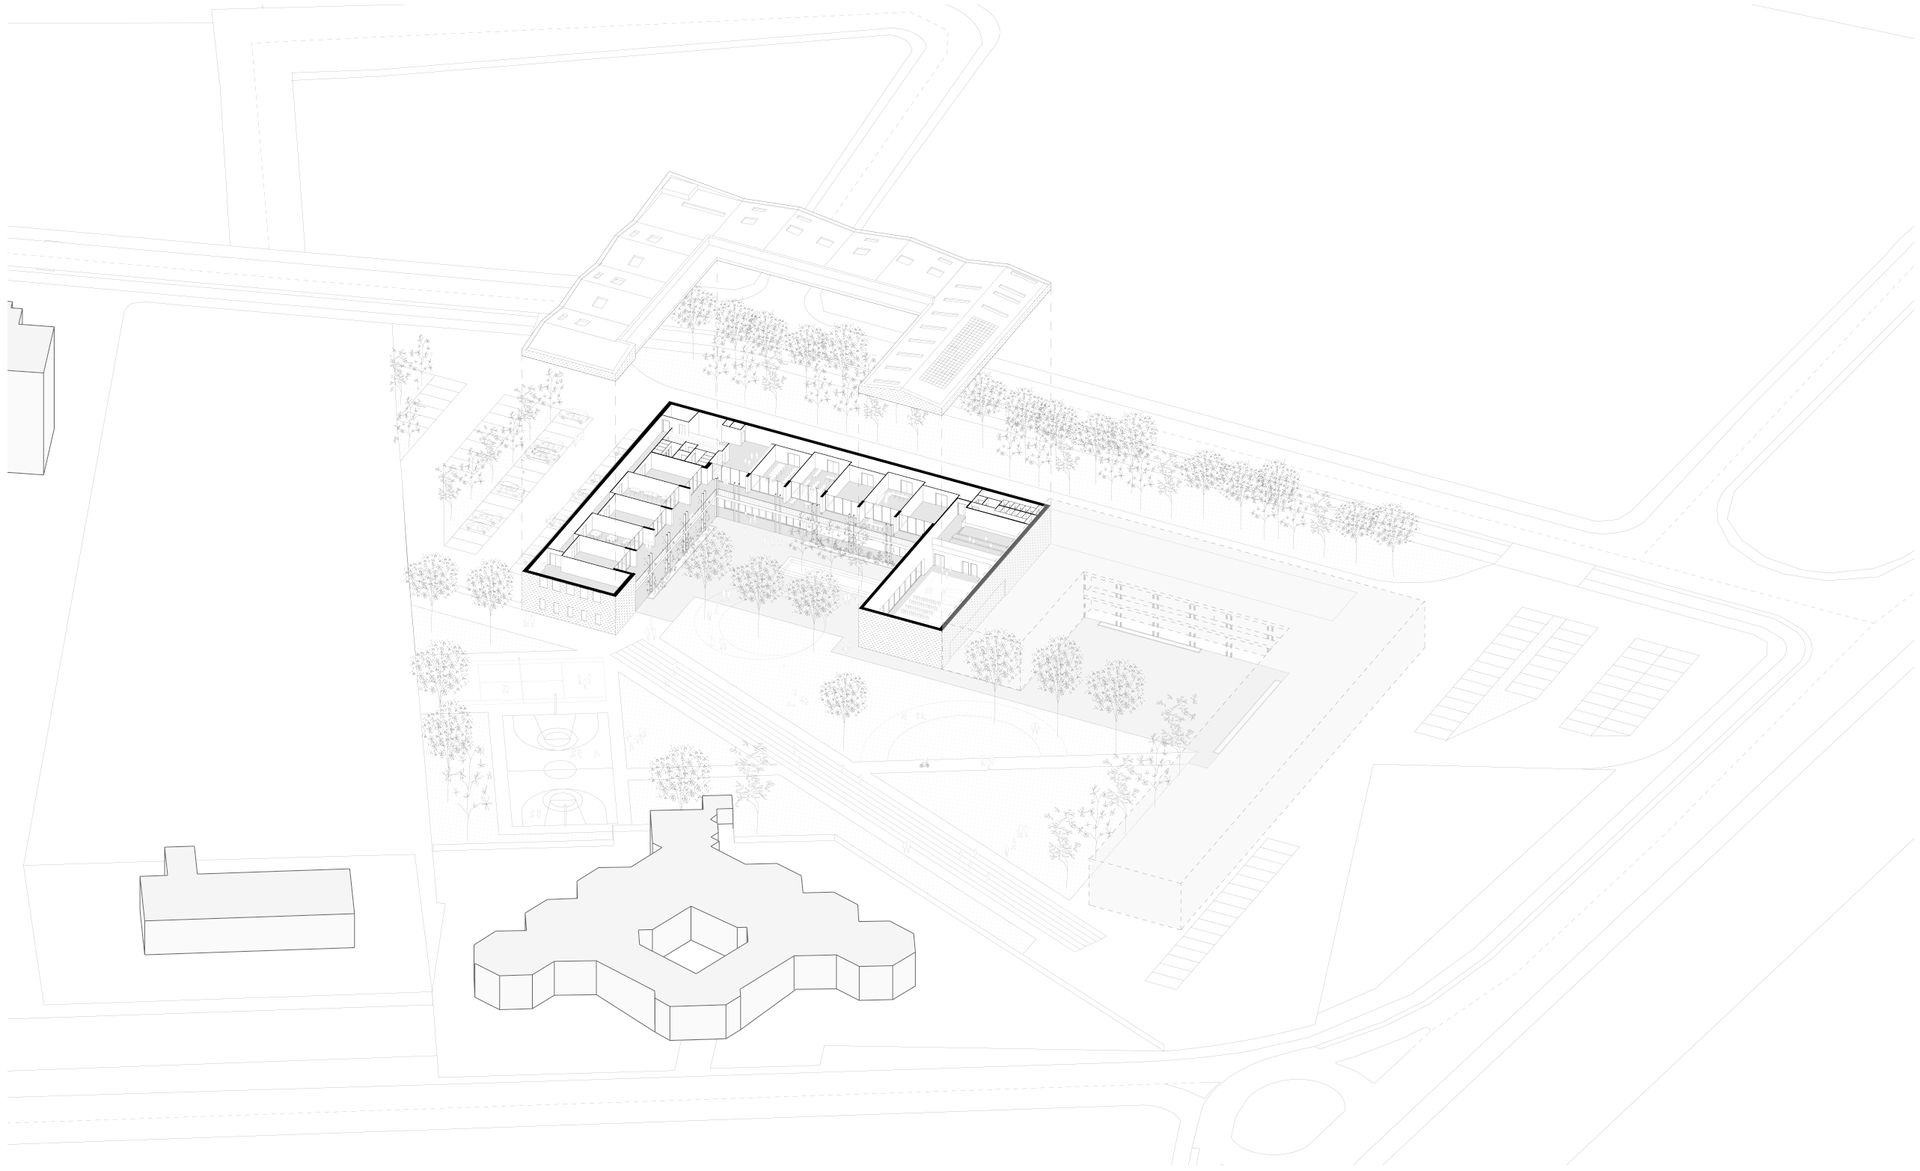 Progetto concorso scuola primaria Avezzano, riuso materiali locali. Officina Magisafi architettura design - assonometria